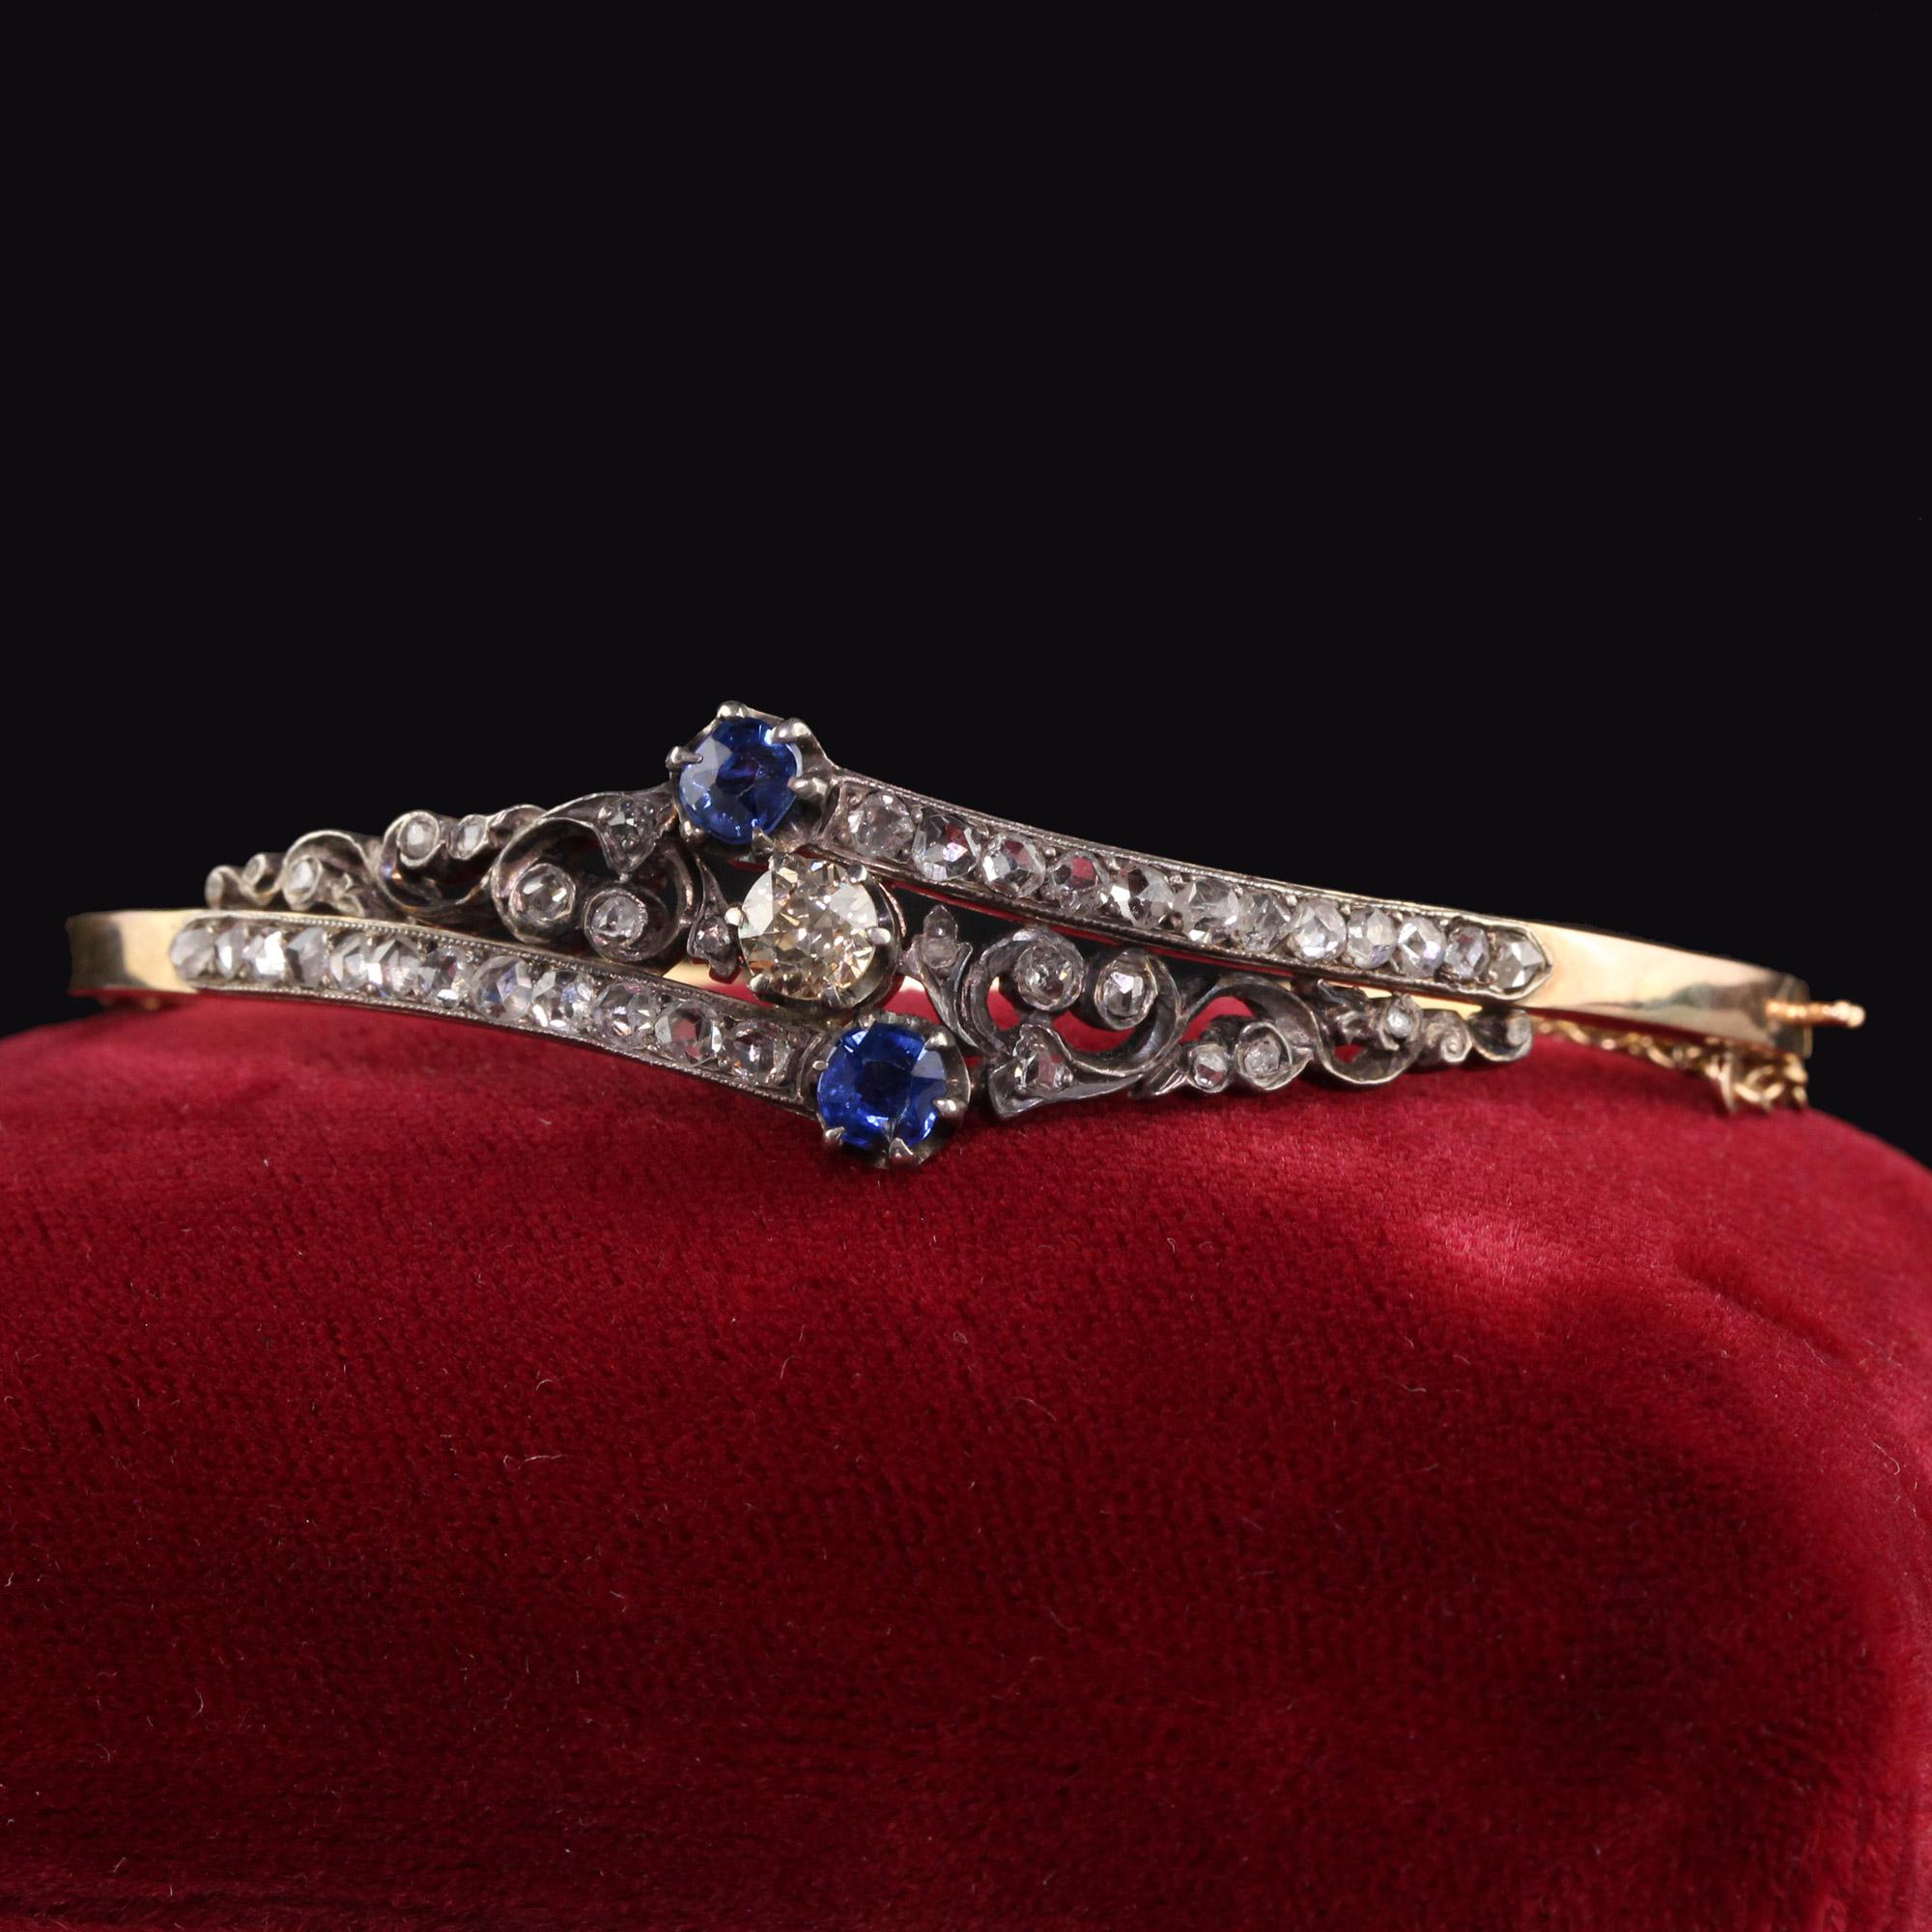 Schöne antike viktorianische 14K Gelbgold Rose Cut Diamant und Saphir Armreif Armband. Dieser wunderschöne Armreif ist aus 14k Gelbgold und Silber gefertigt. Der Armreif ist mit klobigen Diamanten im Rosenschliff besetzt. In der Mitte befindet sich